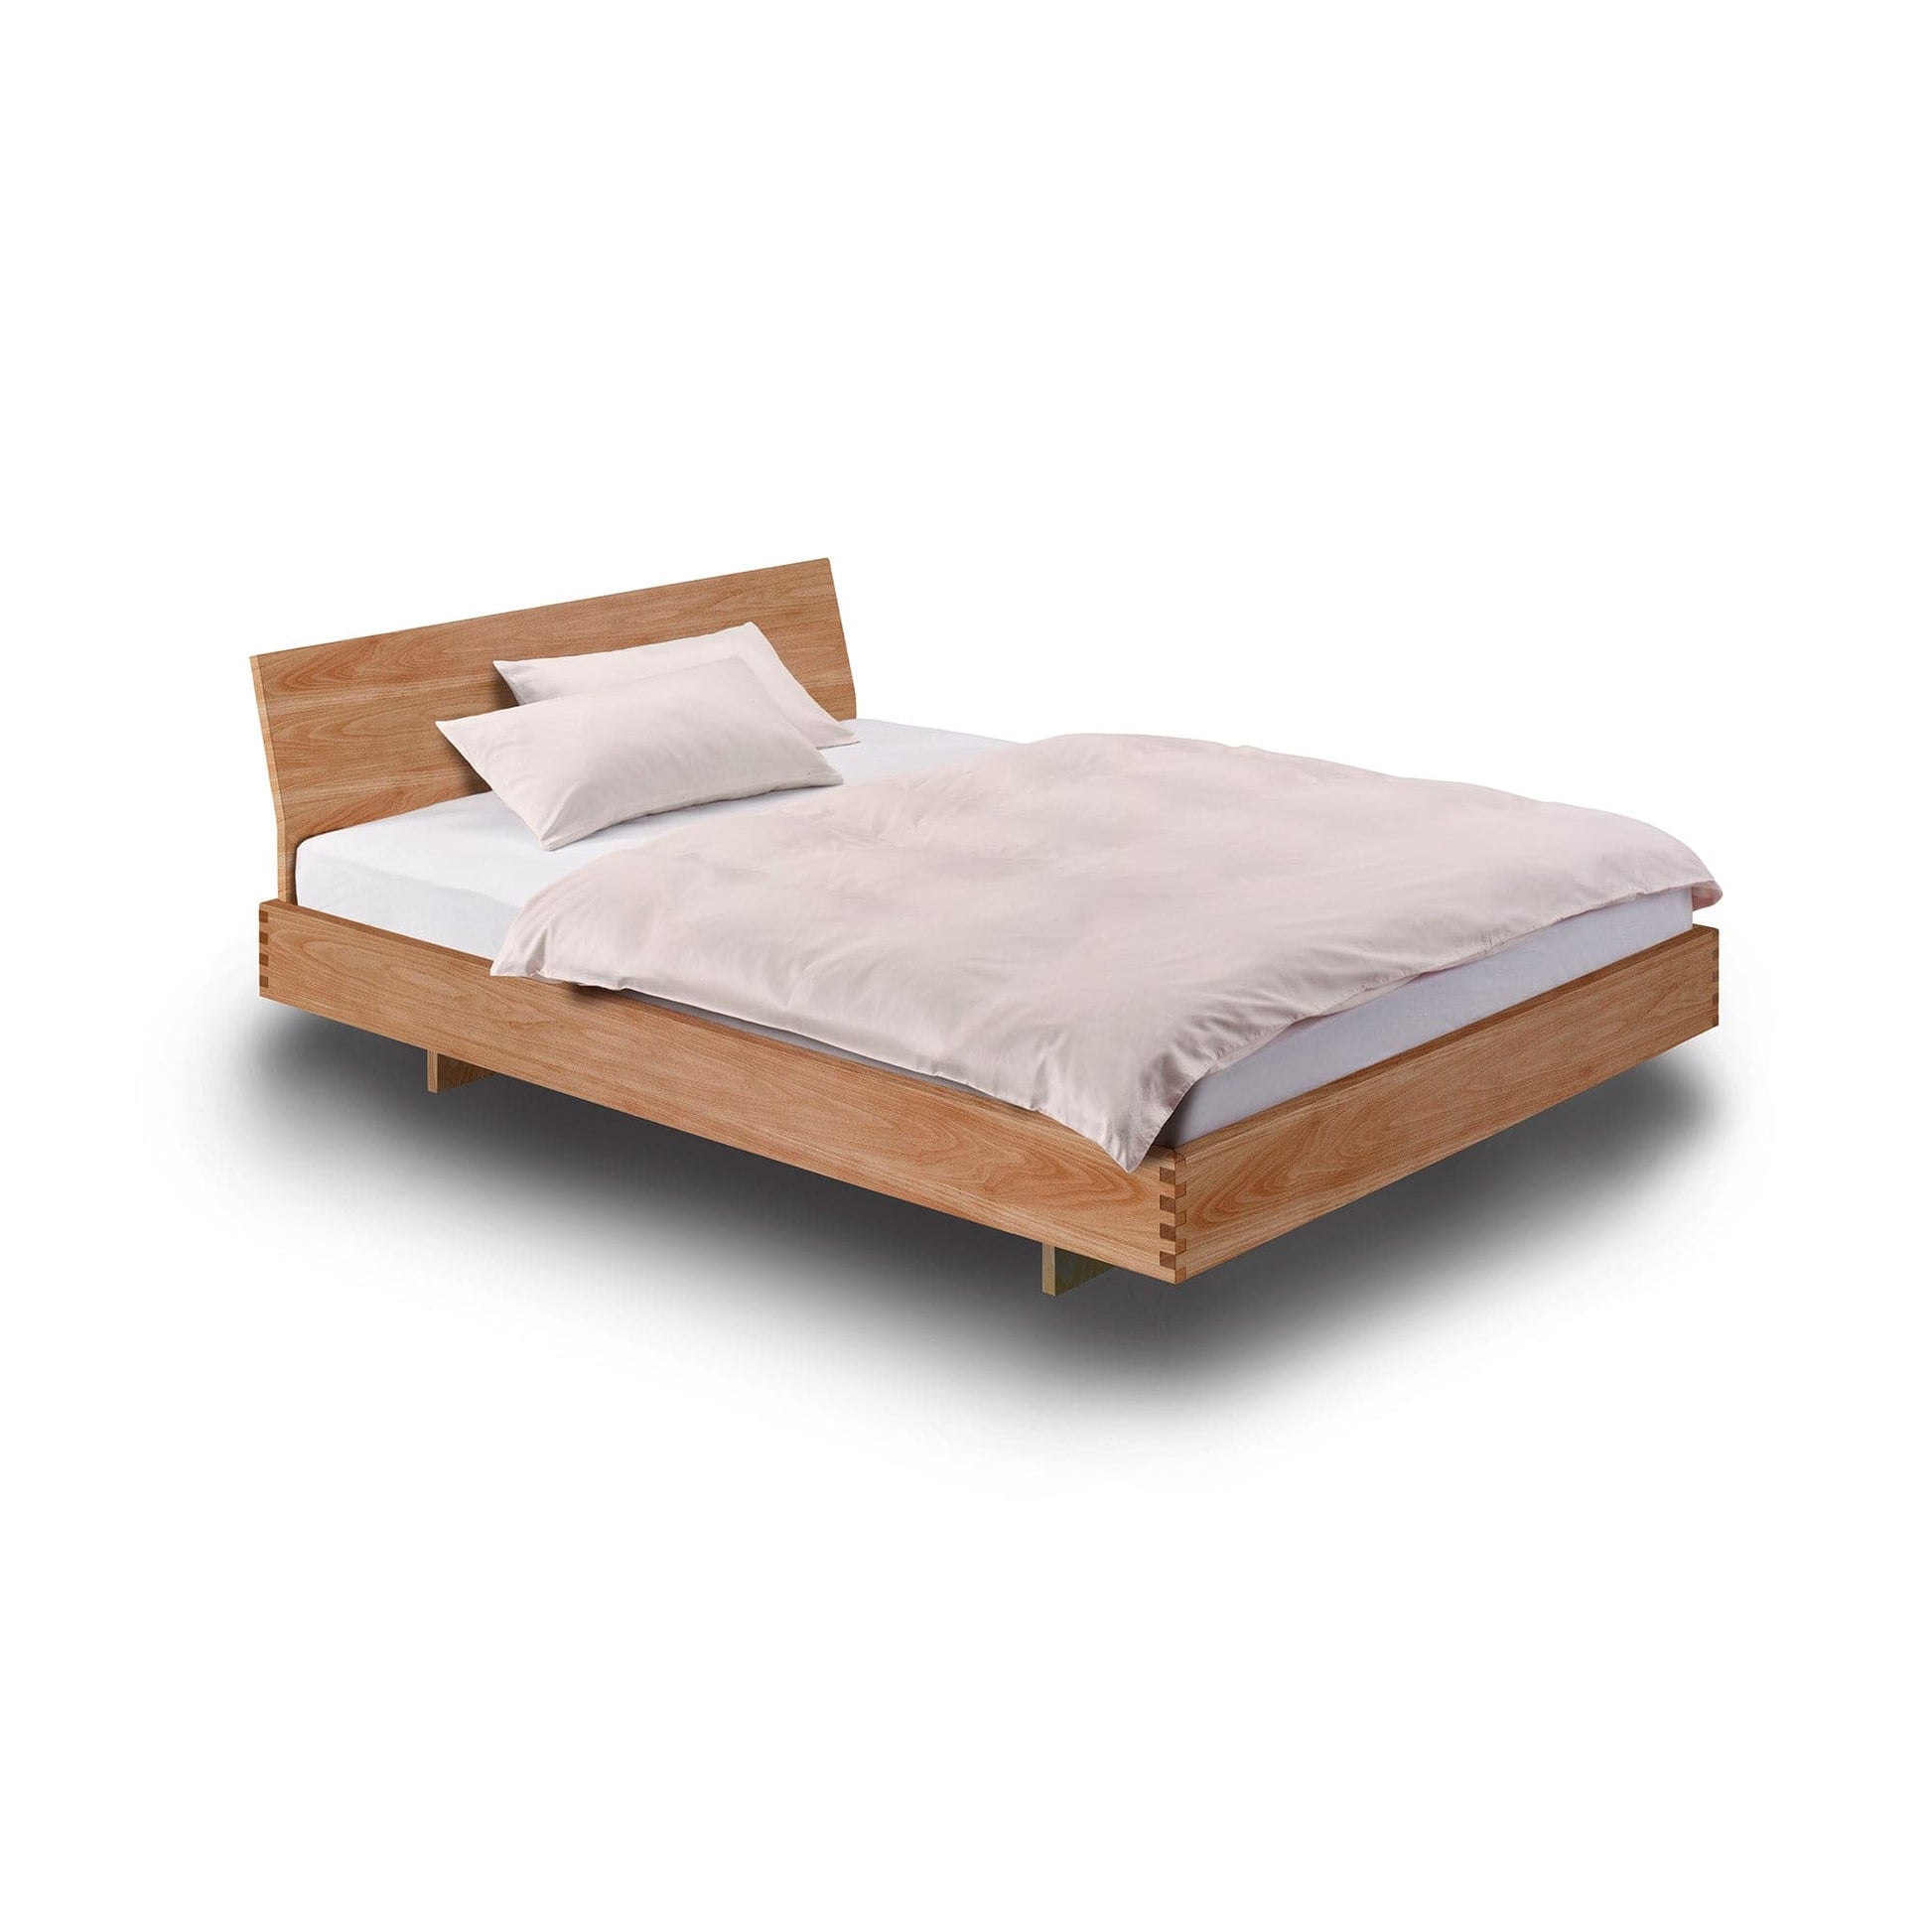 Holzmanufaktur metallfrei Naturholzbetten. Hochwertige und handwerkliche Betten aus unserer Schreinerei, Made in Germany